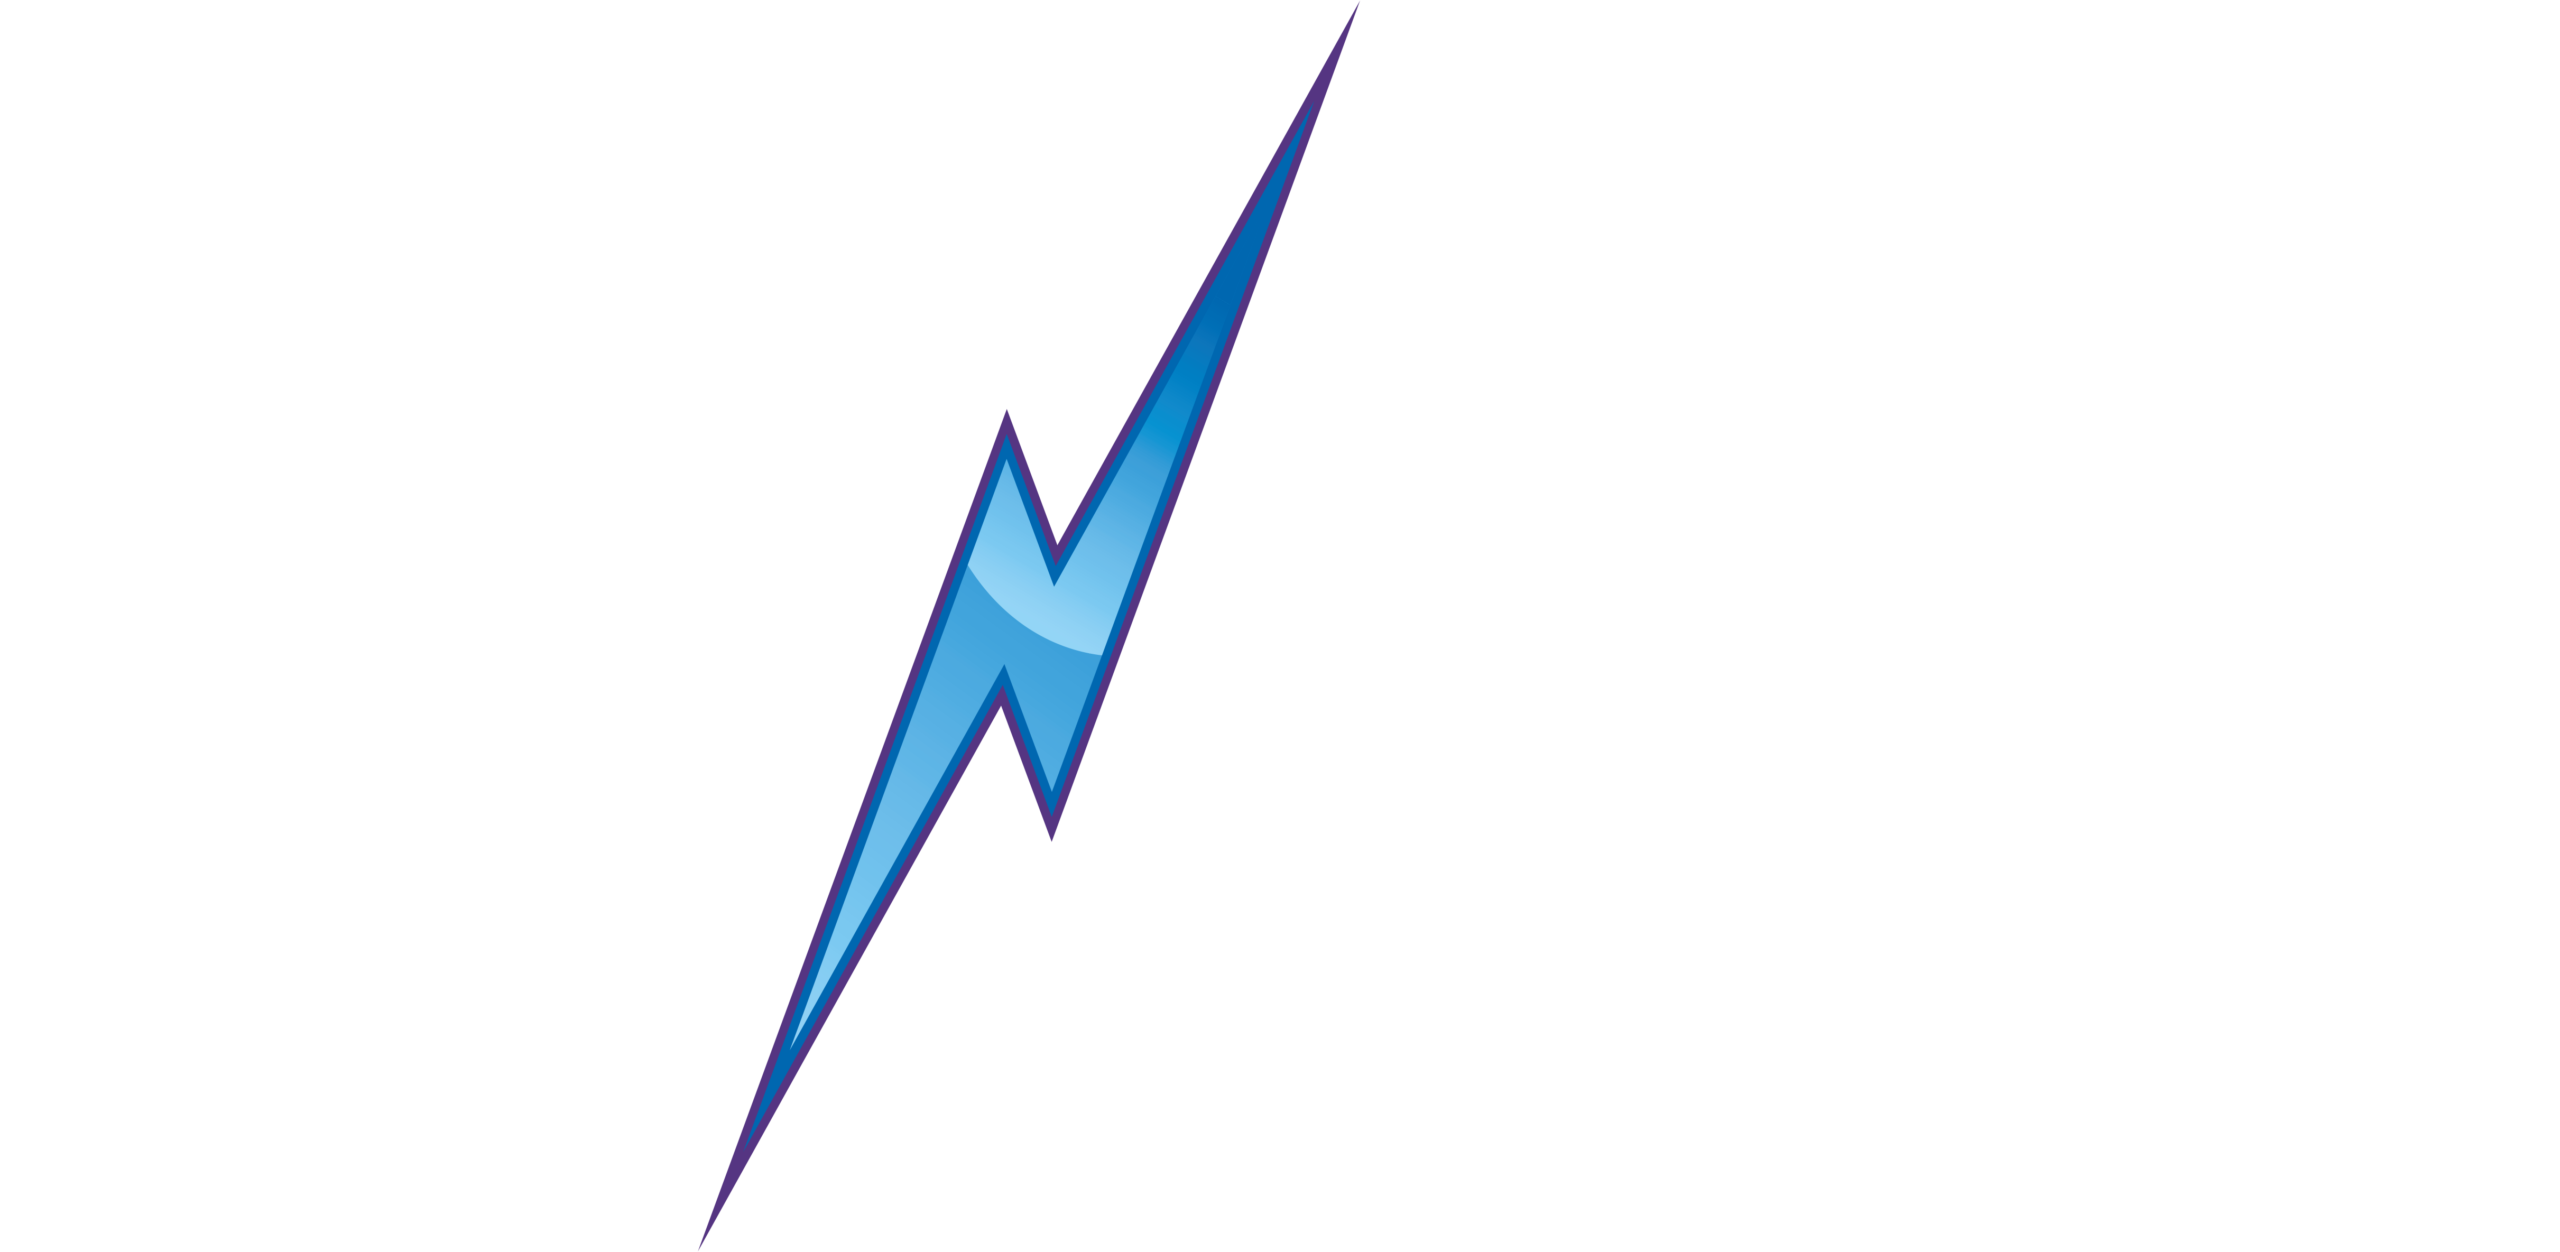 FastNetMon_logo